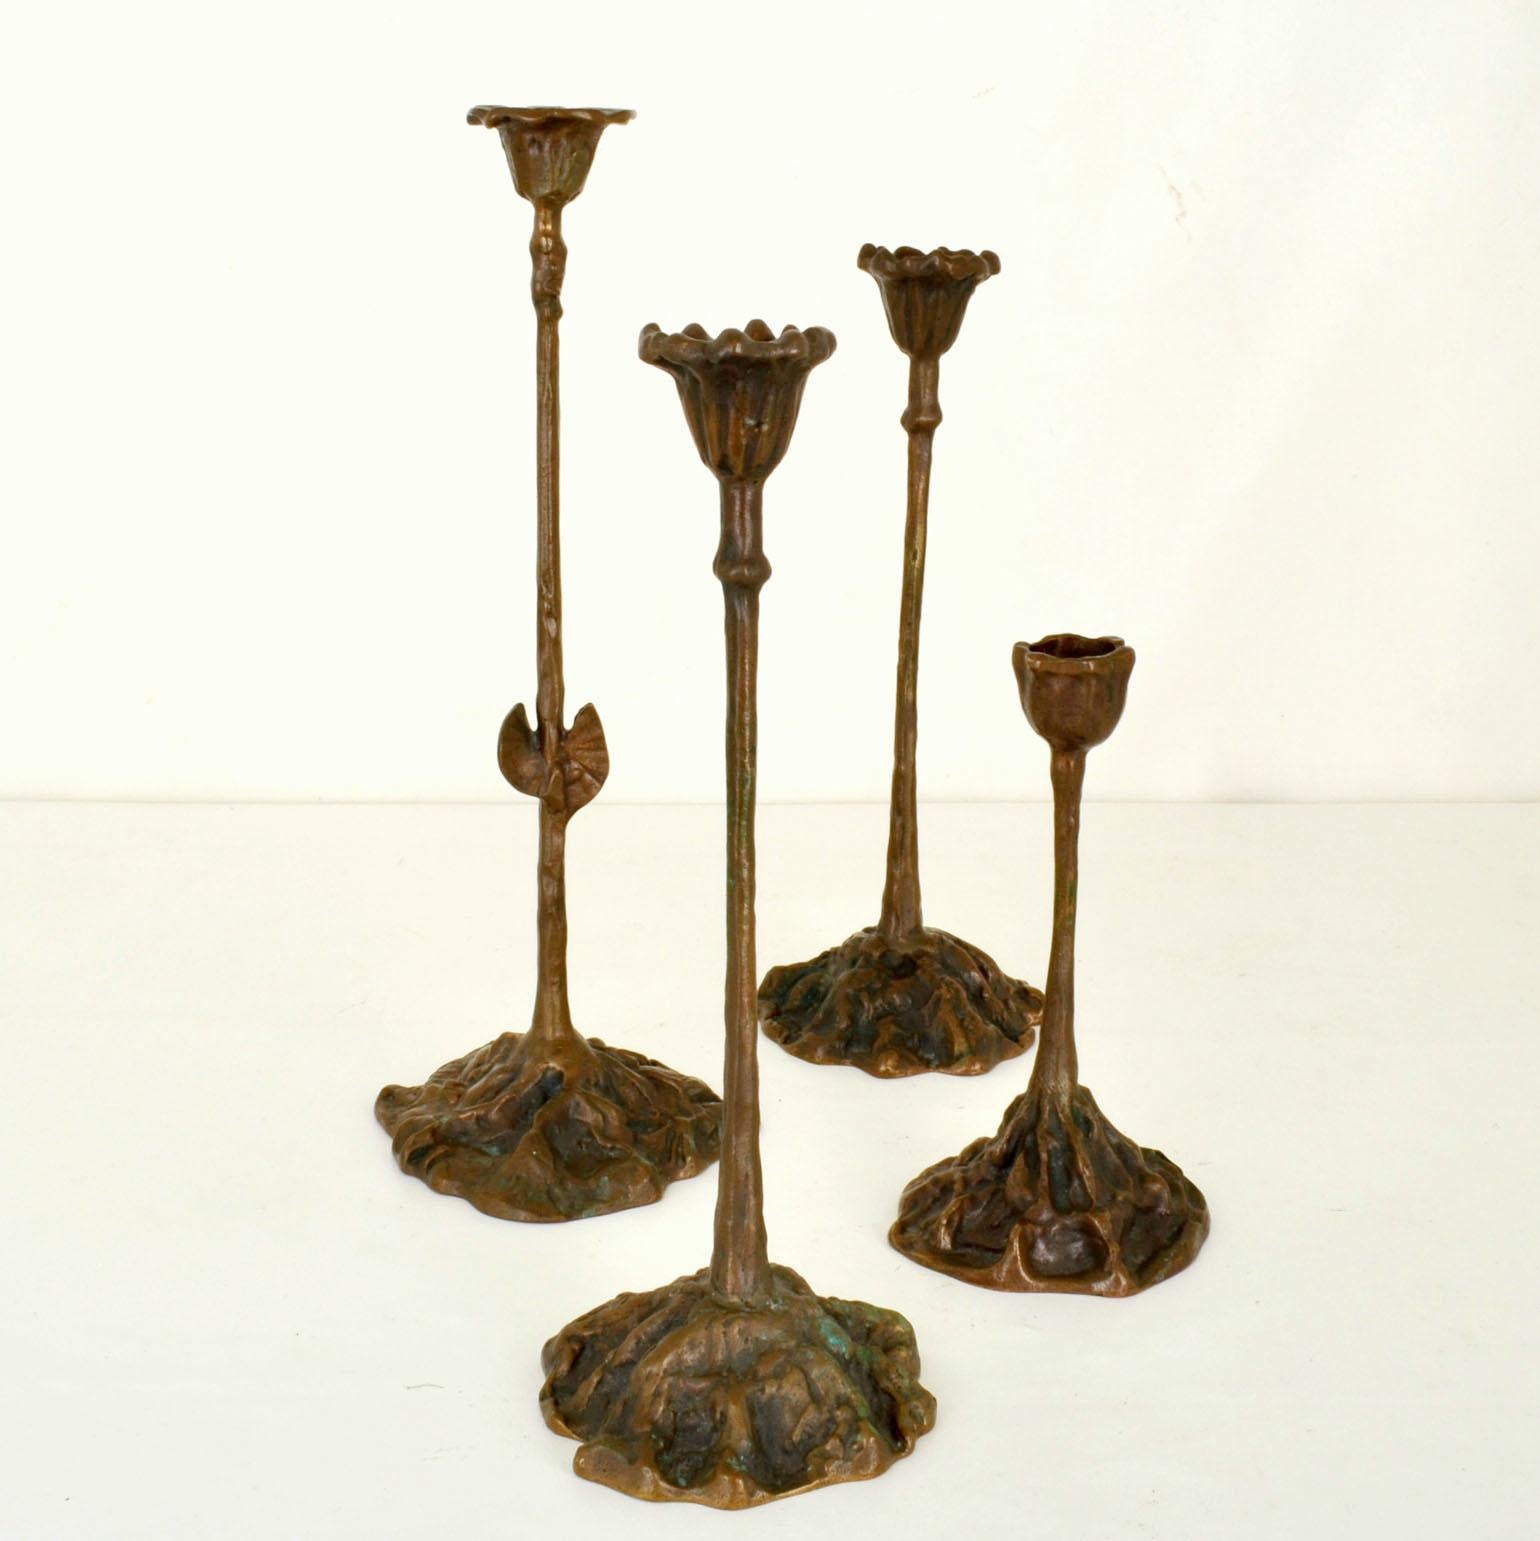 Gruppe von vier Kerzenhaltern auf verschiedenen Höhen aus Bronzeguss in organischem Design, das das Wachstum von Pflanzen aus verwurzelten Basen ausdrückt. Sie sind für normale Kerzen gedacht. Die Bronze hat ihre ursprüngliche, naturnahe Patina mit